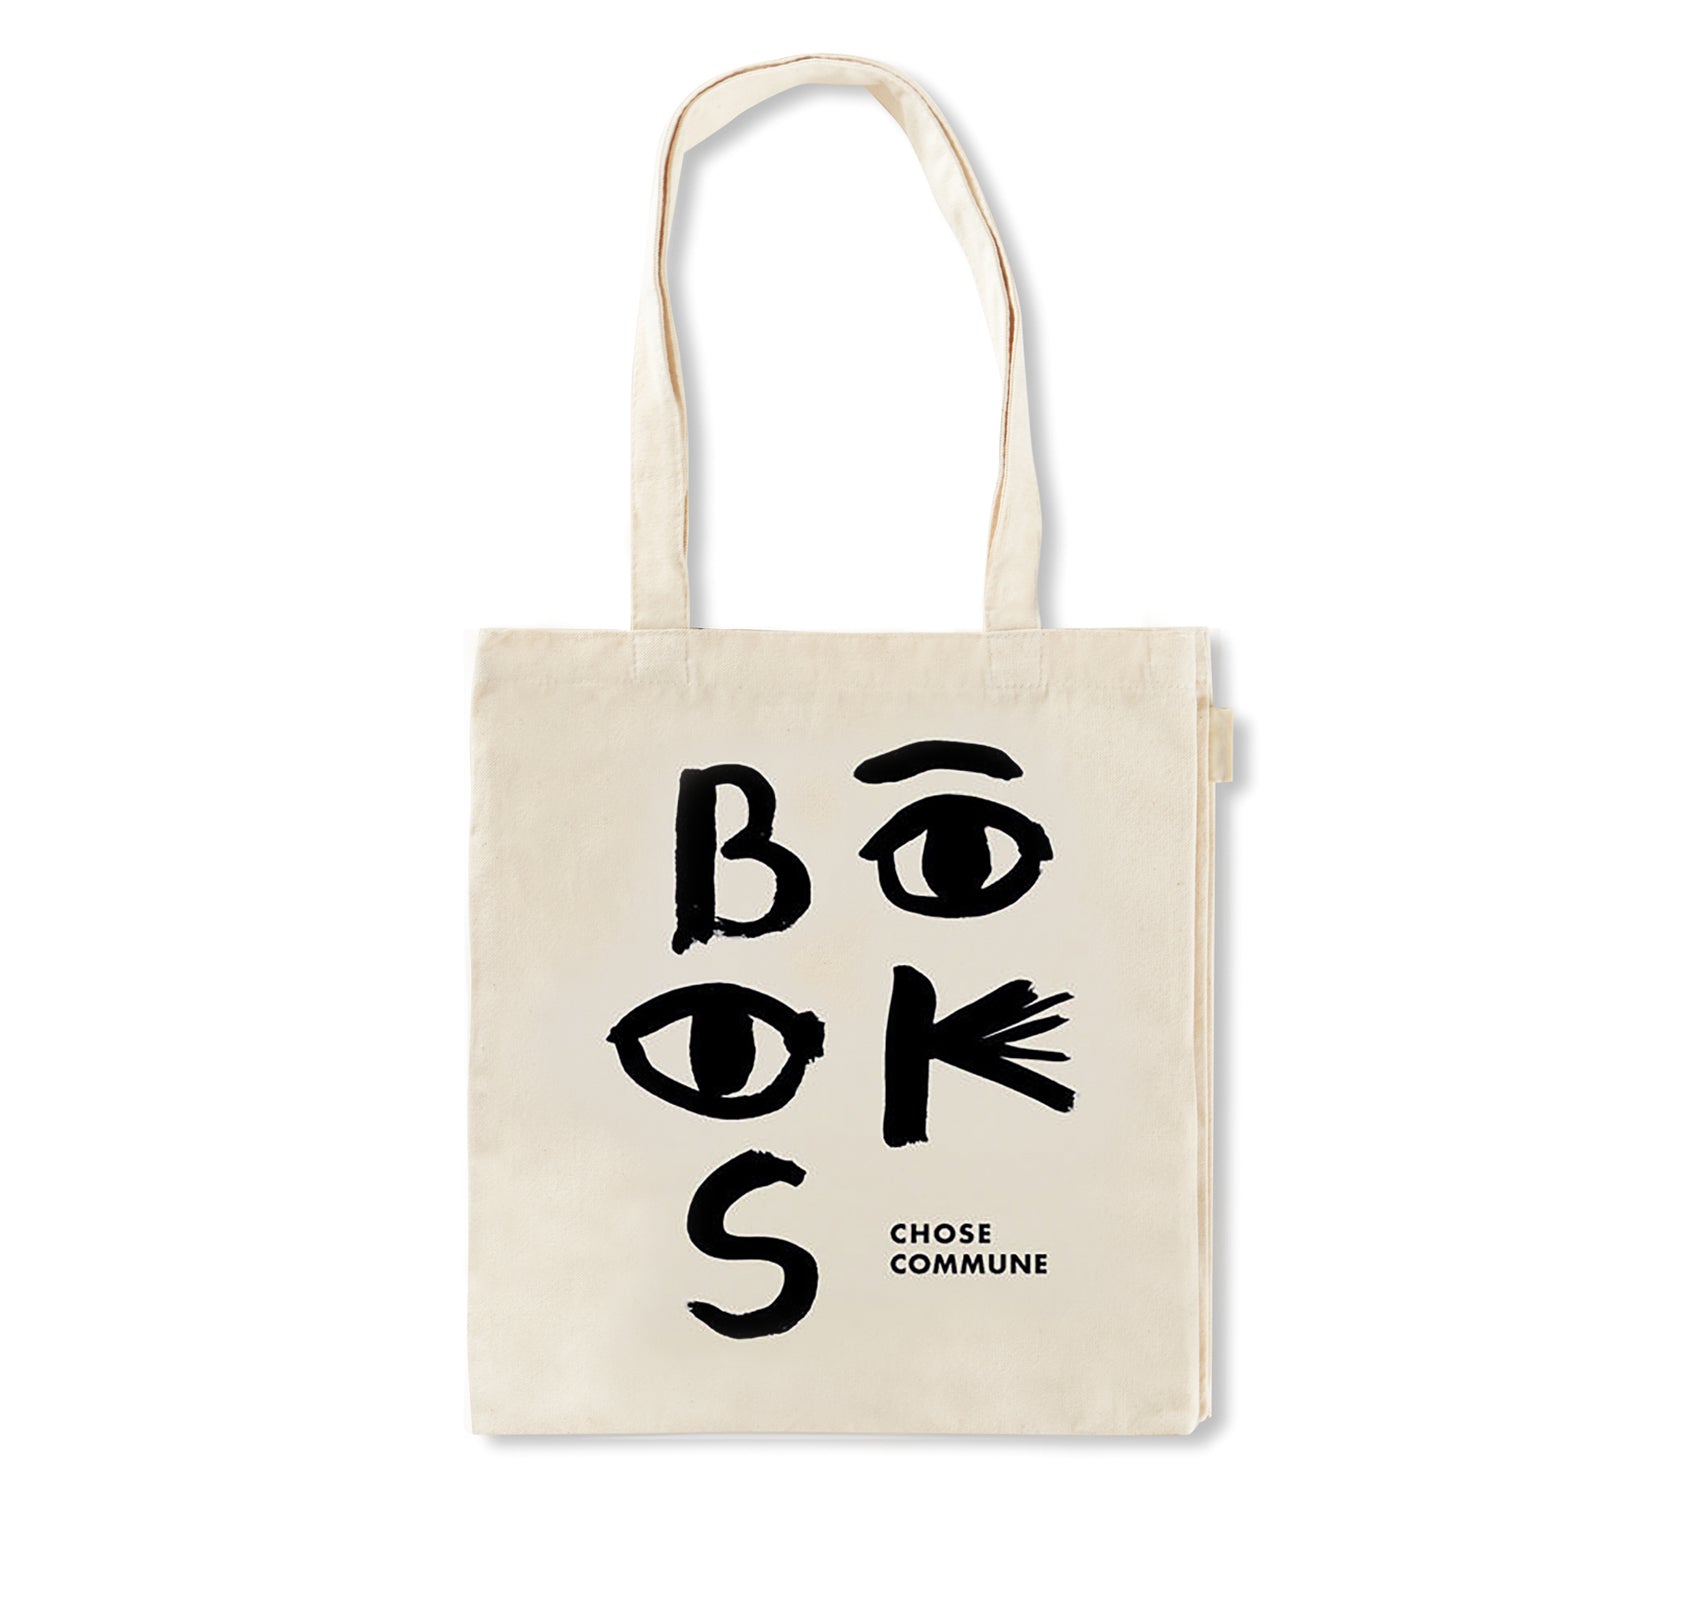 BOOK BAG by Iris de Moüy